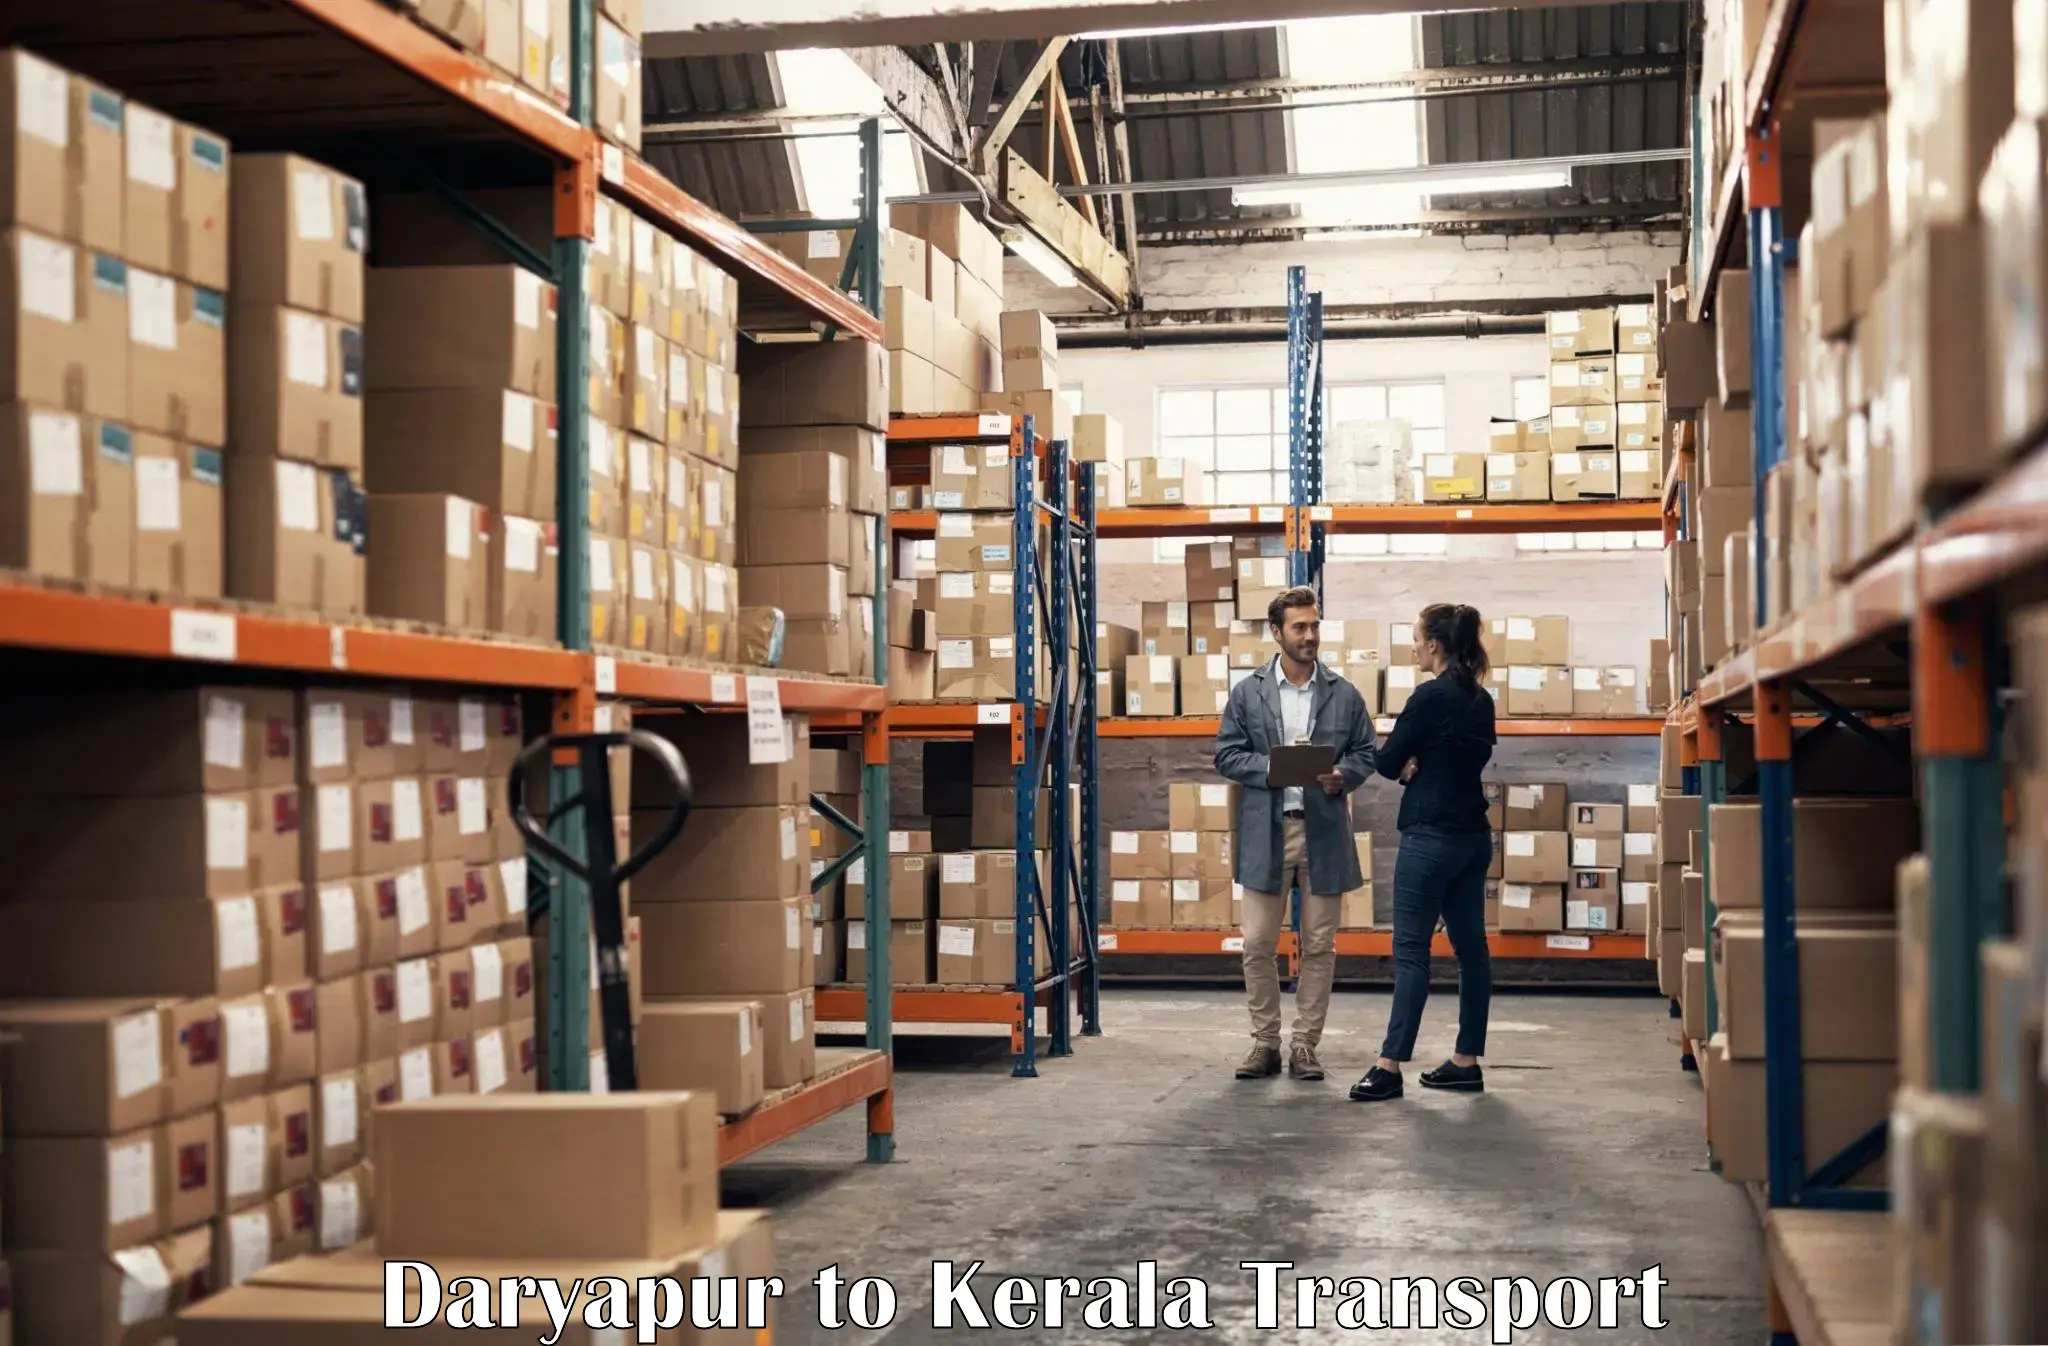 Cargo transportation services Daryapur to Kozhencherry